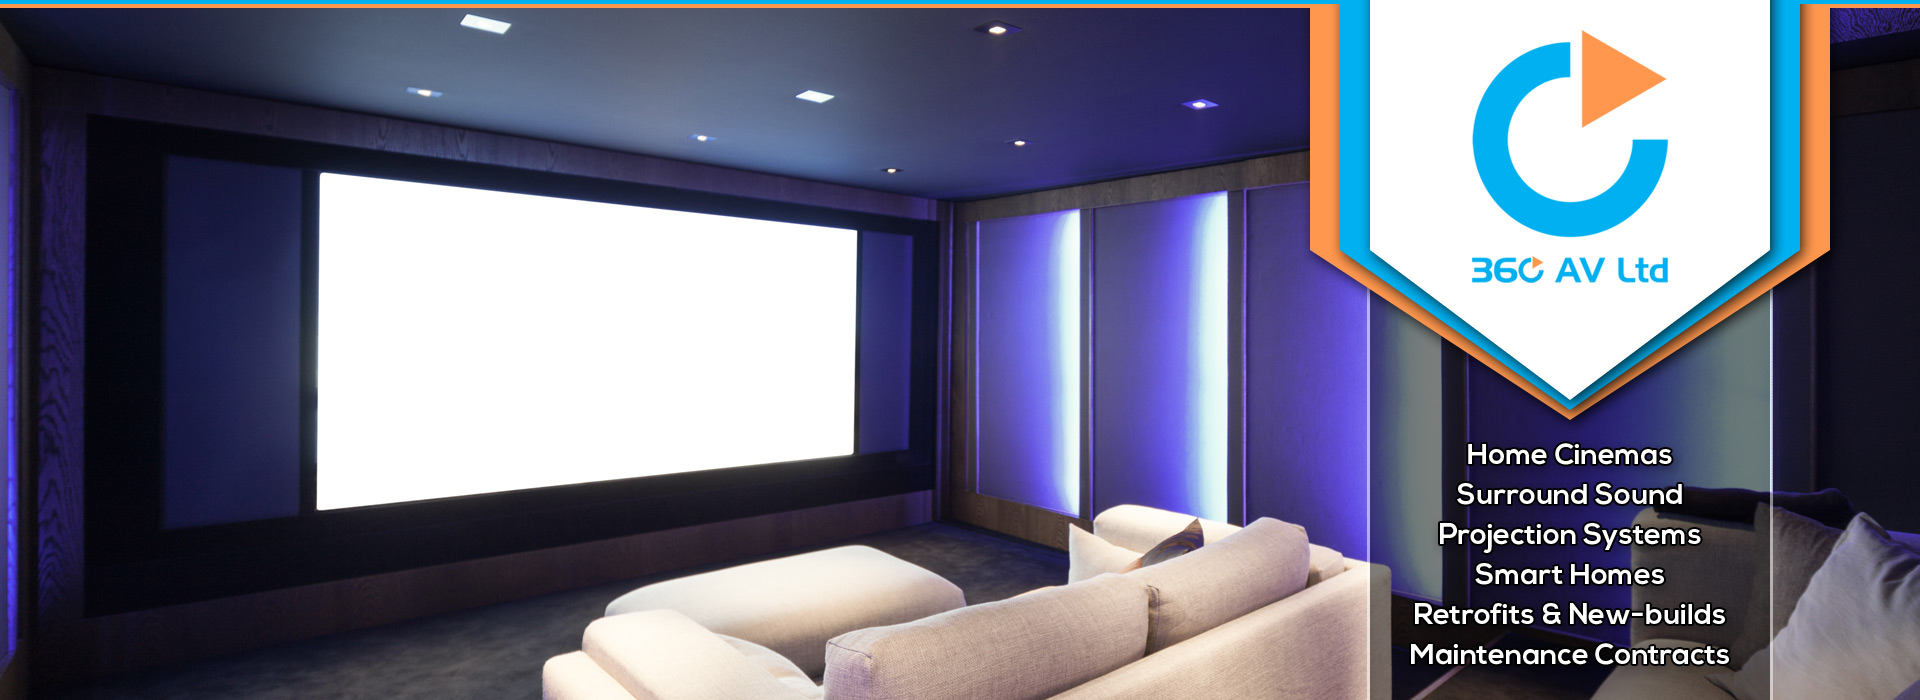 360 AV Ltd | Home Cinema System